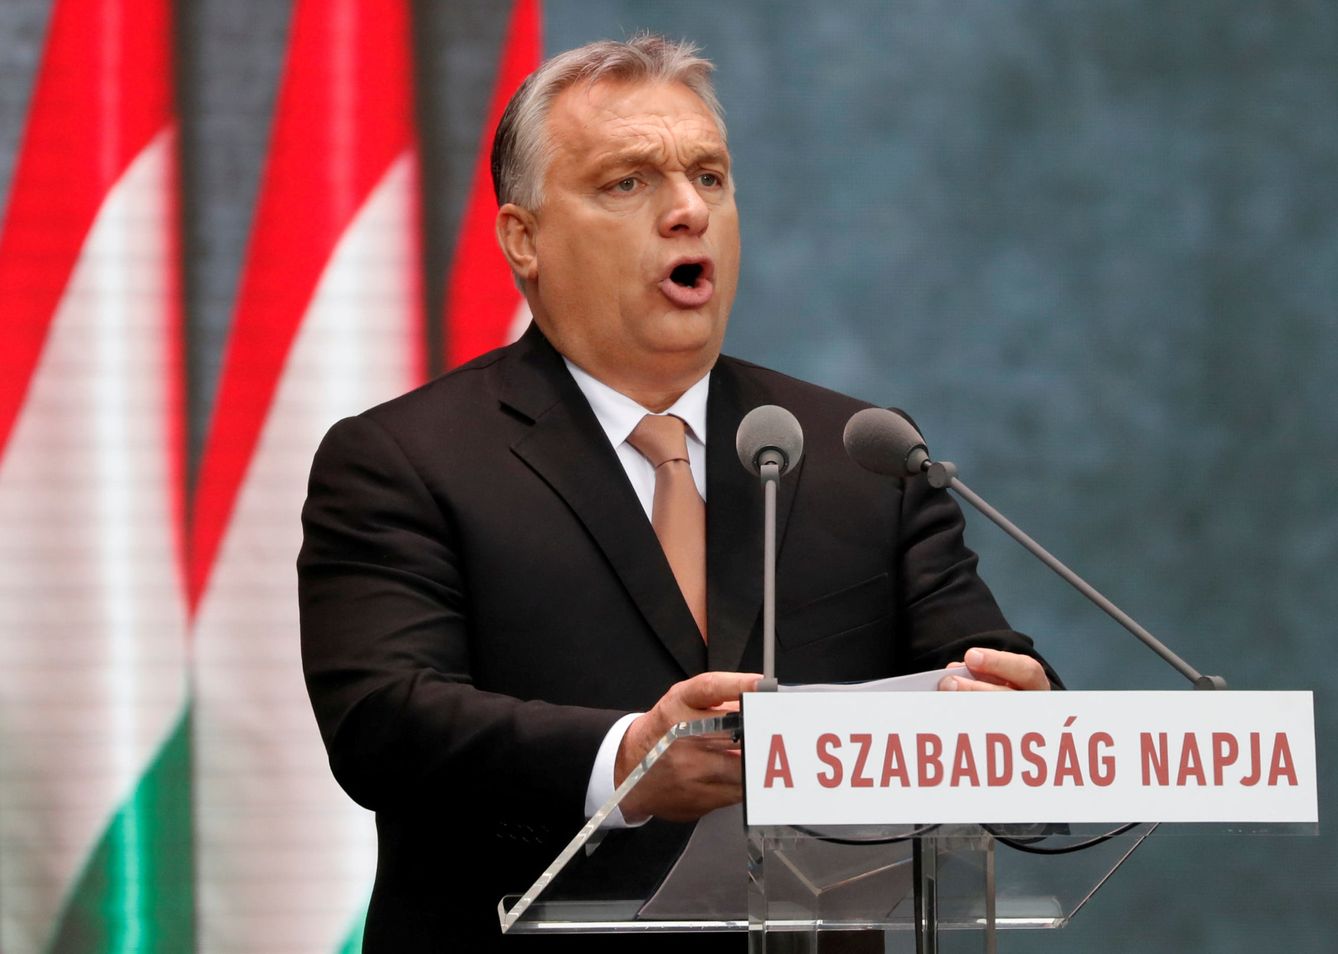 Víktor Orbán da un discurso durante el 62º aniversario del levantamiento húngaro de 1956, en Budapest, el 23 de octubre de 2018. (Reuters)